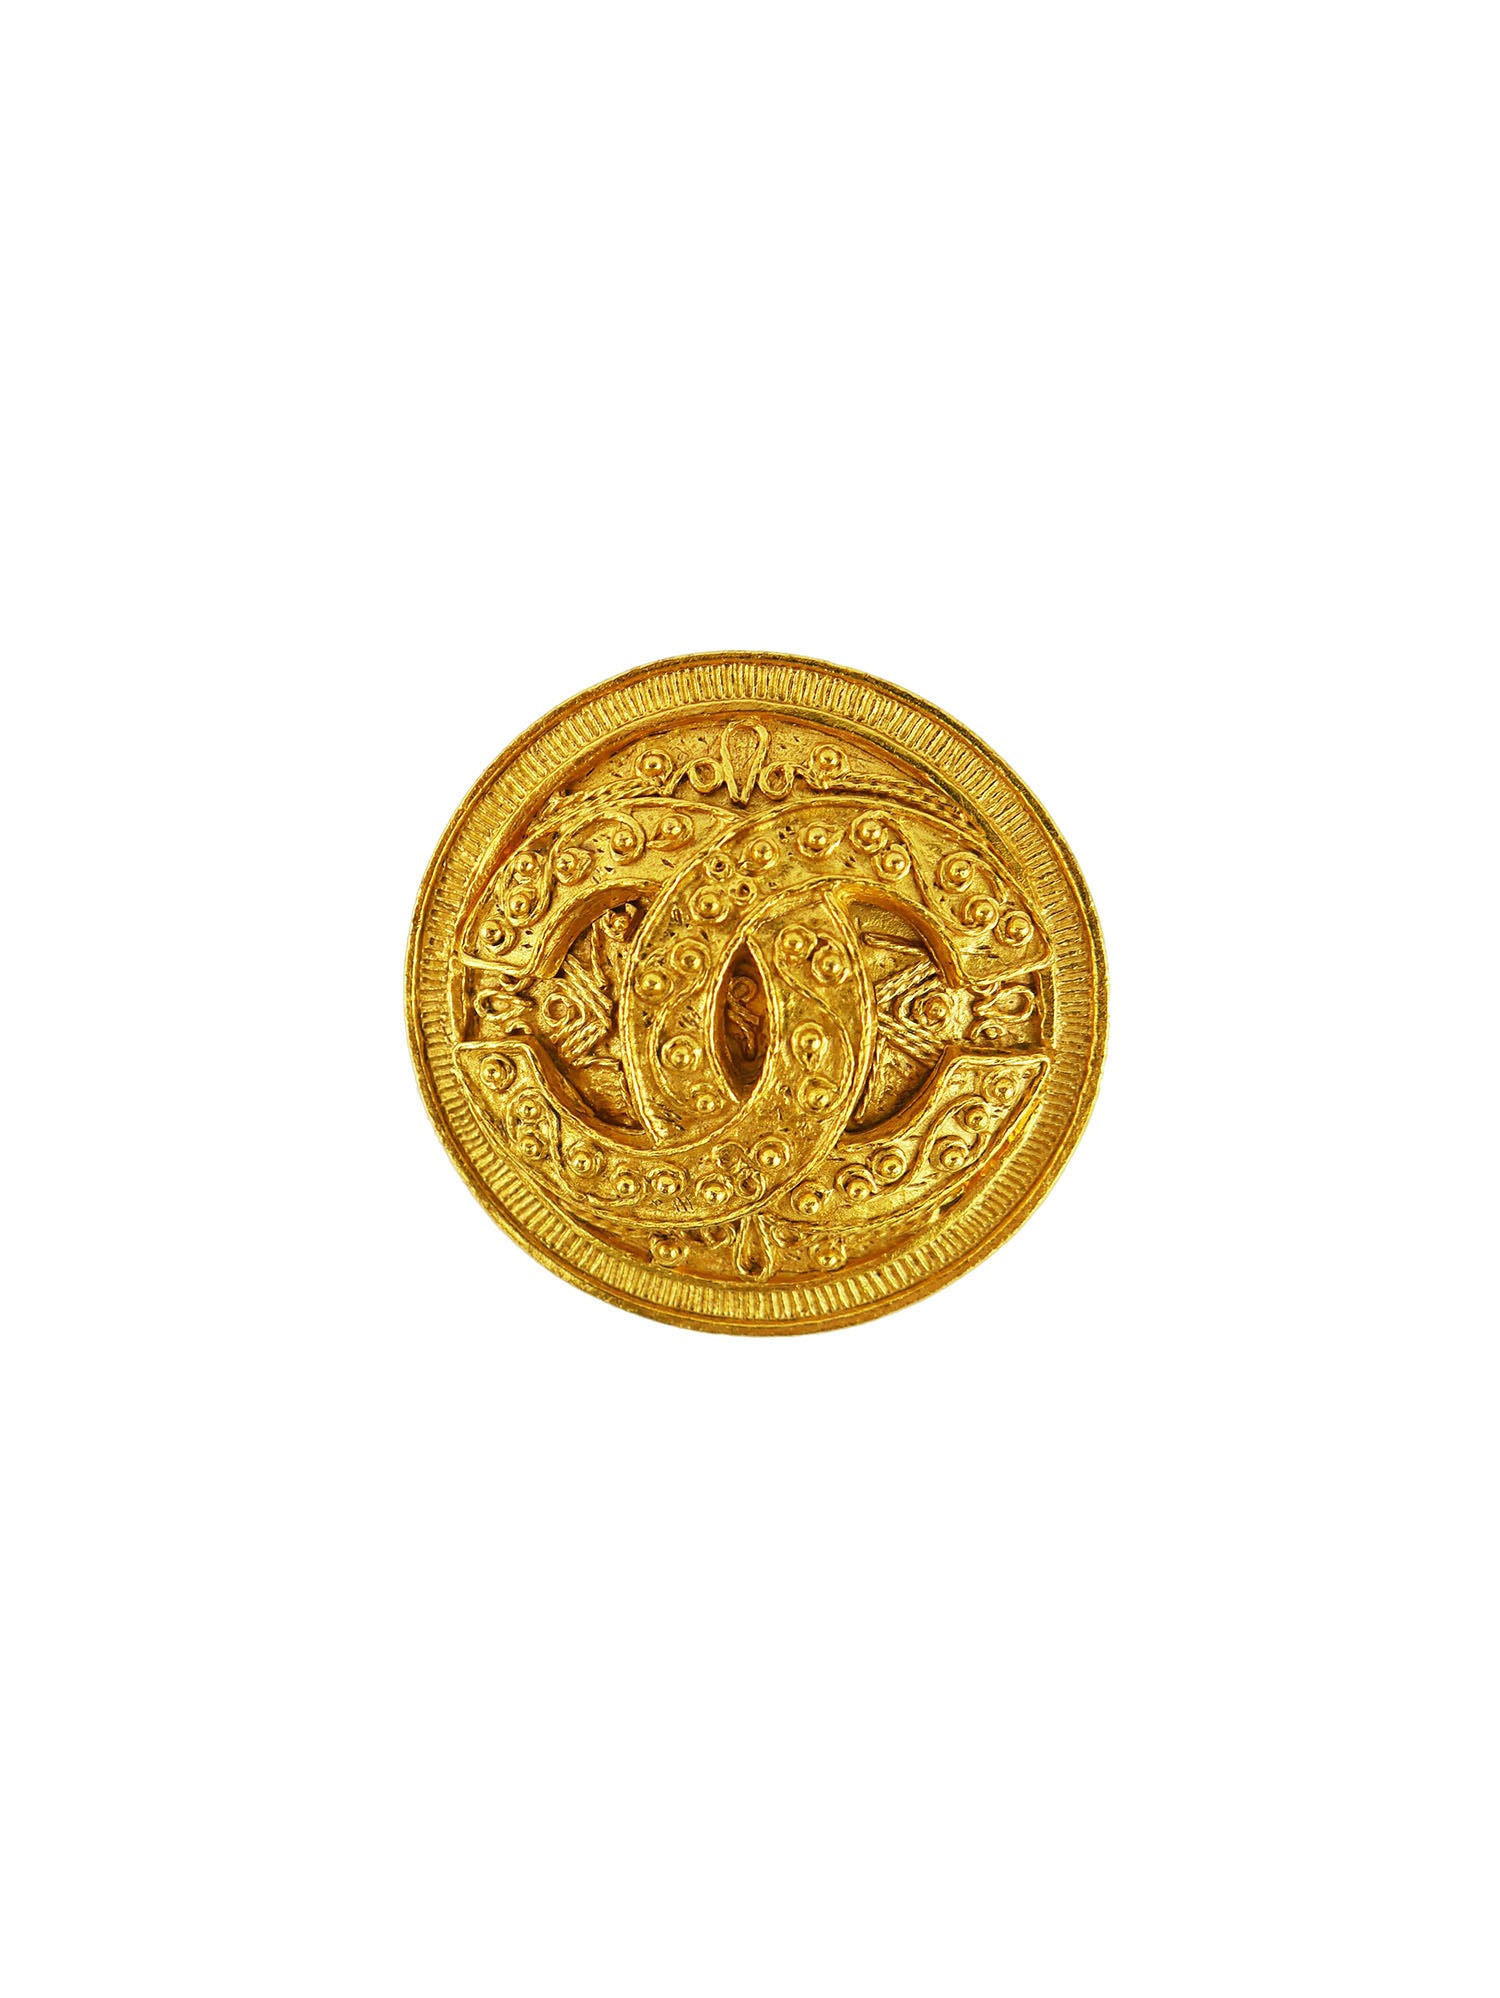 gold chanel brooch vintage